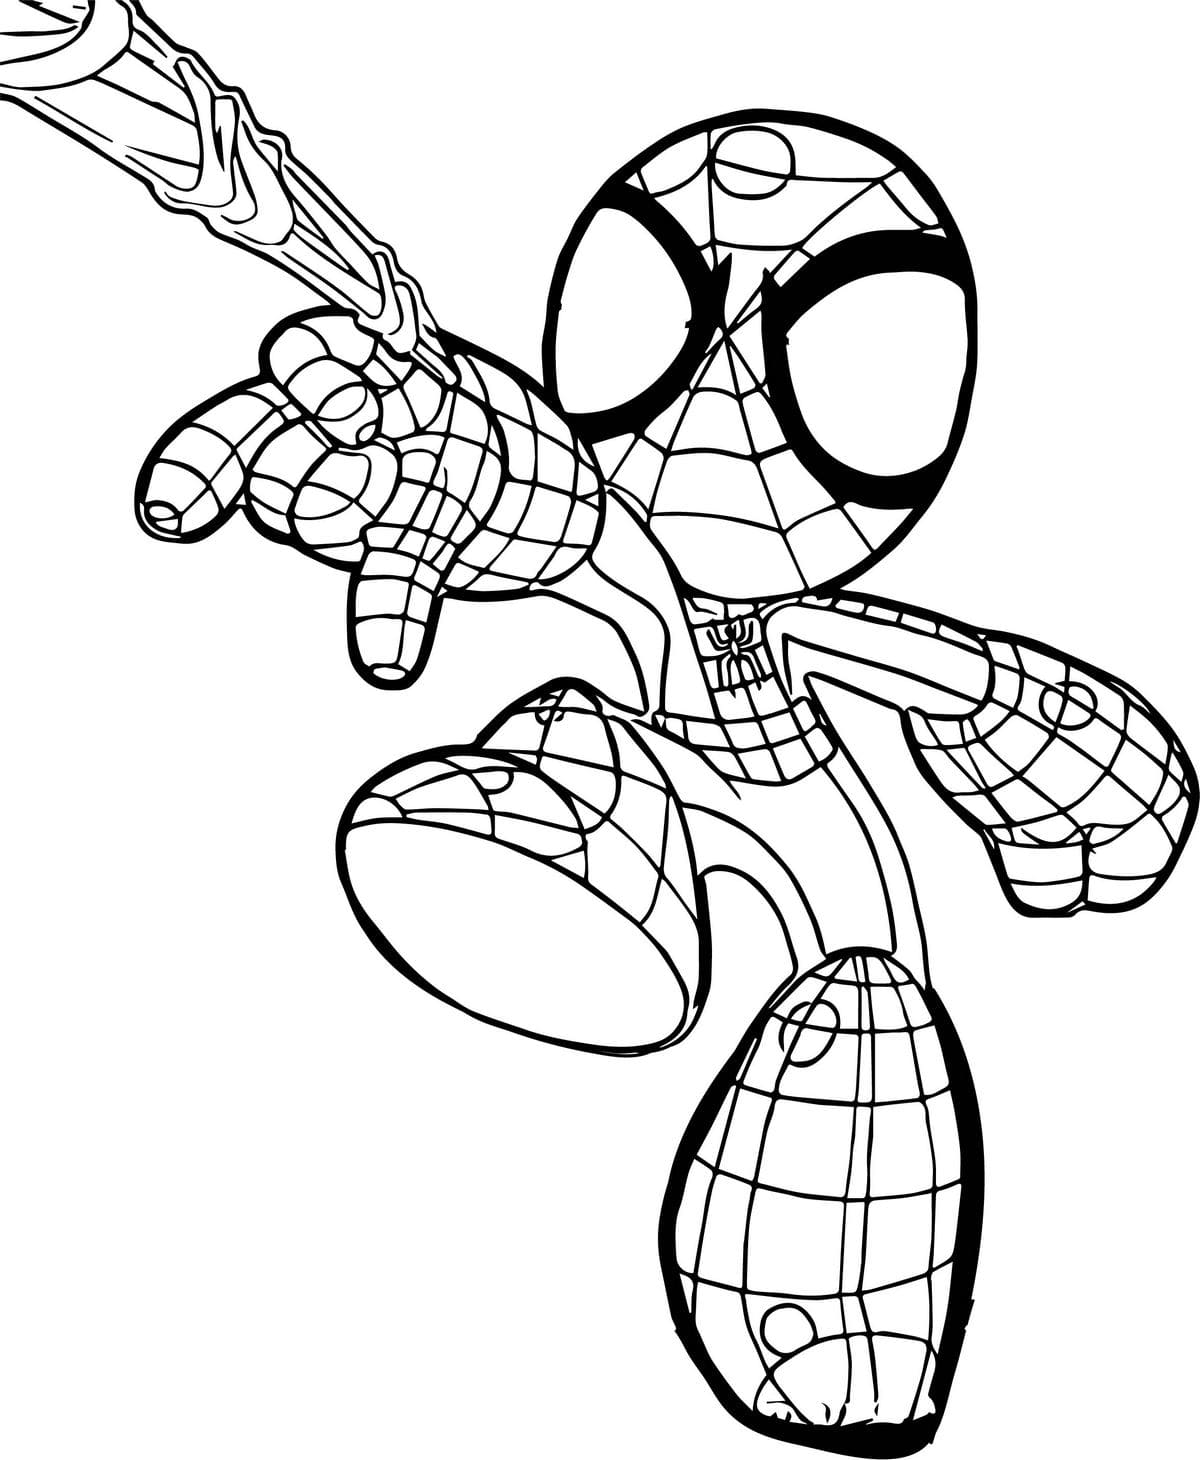 Coloriages Spiderman à imprimer  Wonderday.com